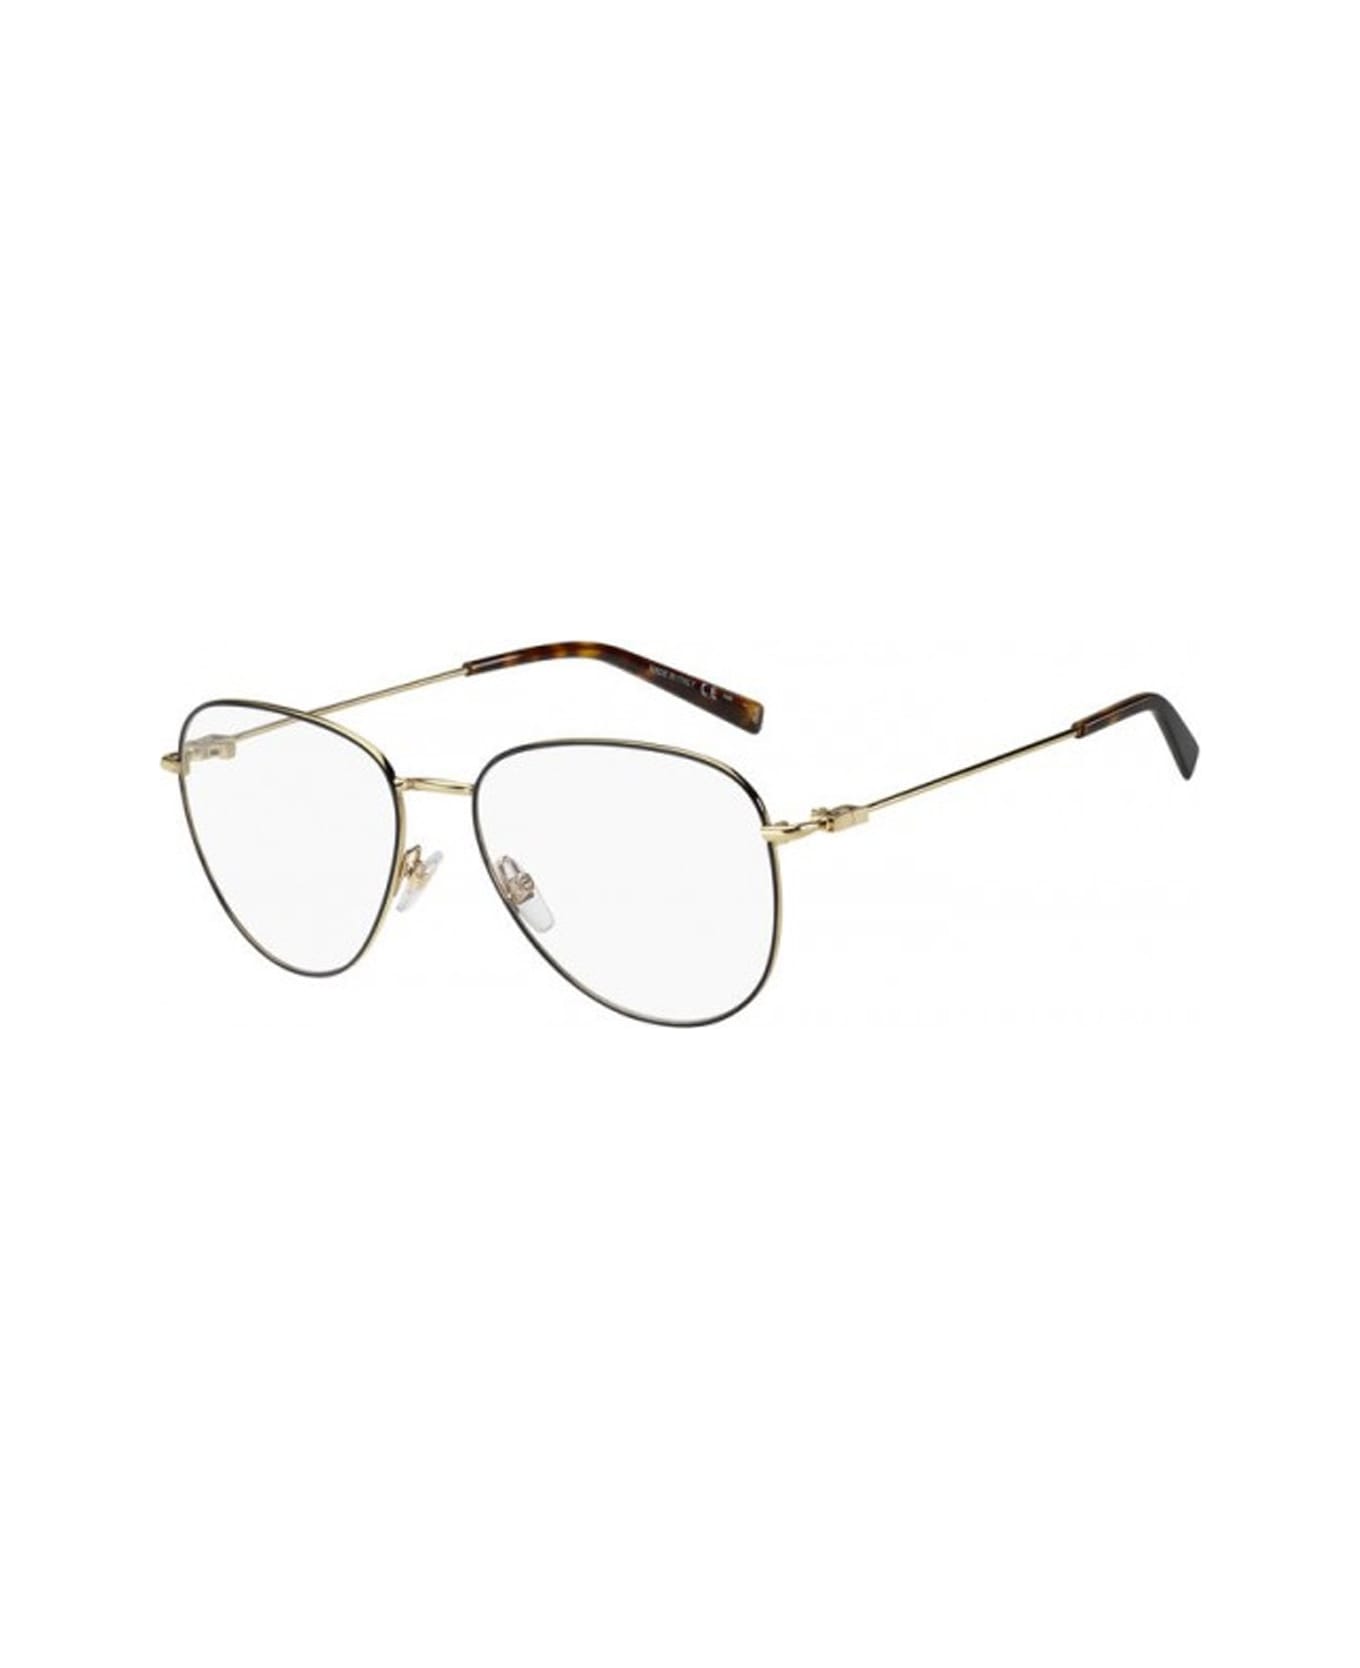 Givenchy Eyewear Gv 0150 Glasses - Nero アイウェア